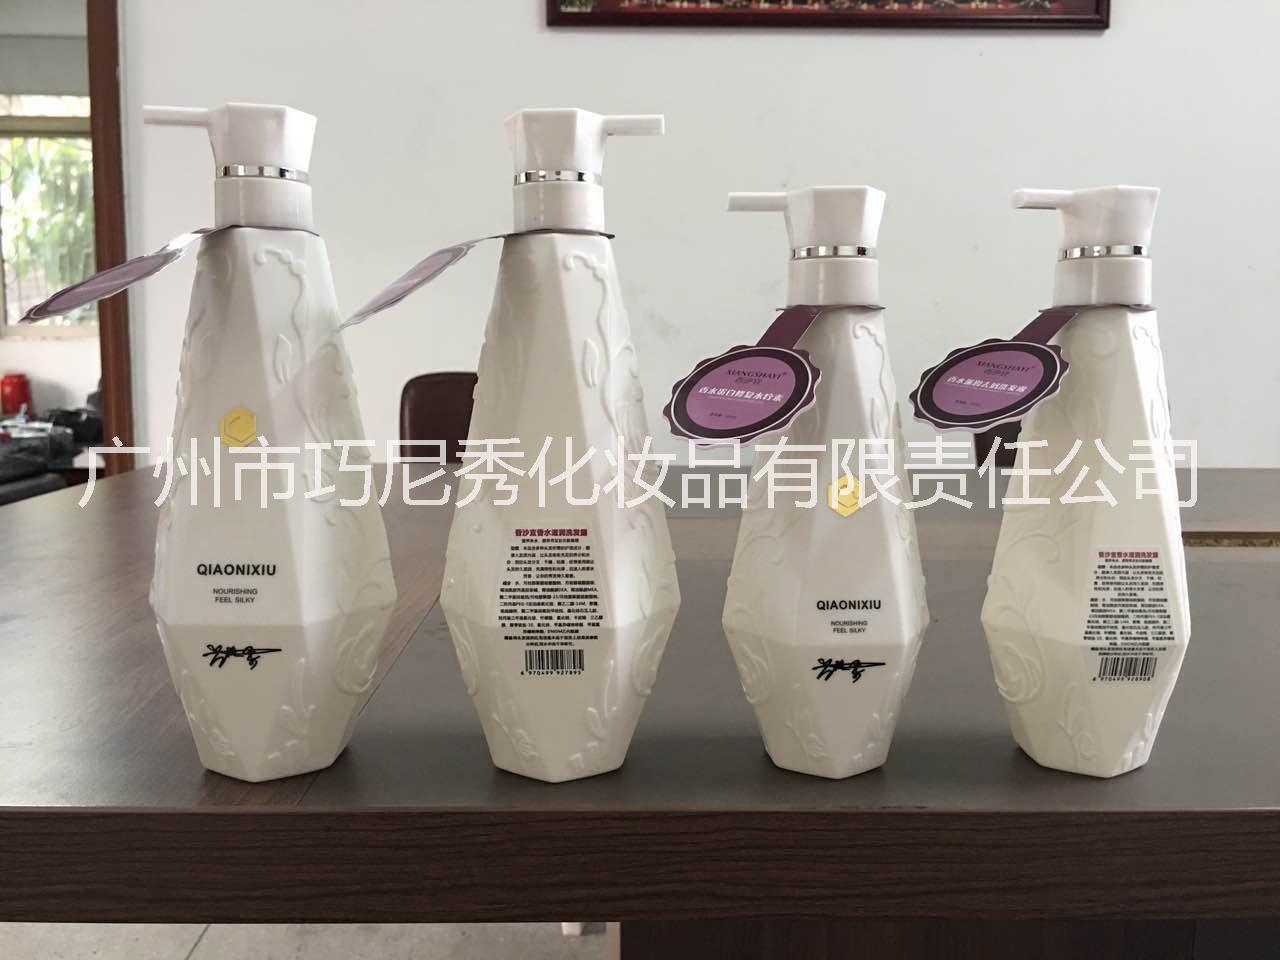 广州市区巧尼秀化妆品有限公司供应香沙宜香水蛋白修复水疗素500ml